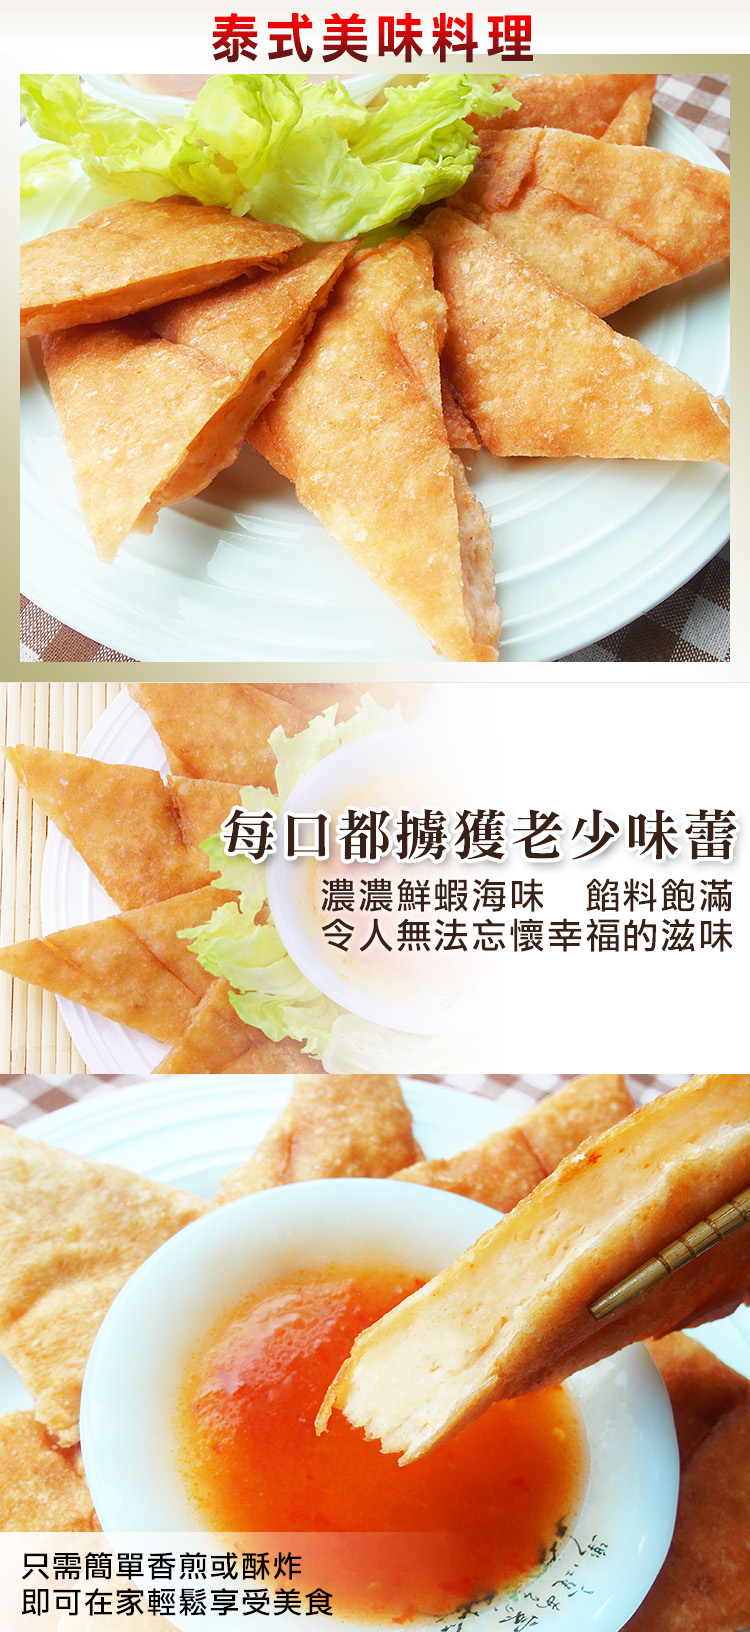 【食吧嚴選】黃金厚片月亮蝦餅-附泰式醬 *16片組(200g±10%/片)